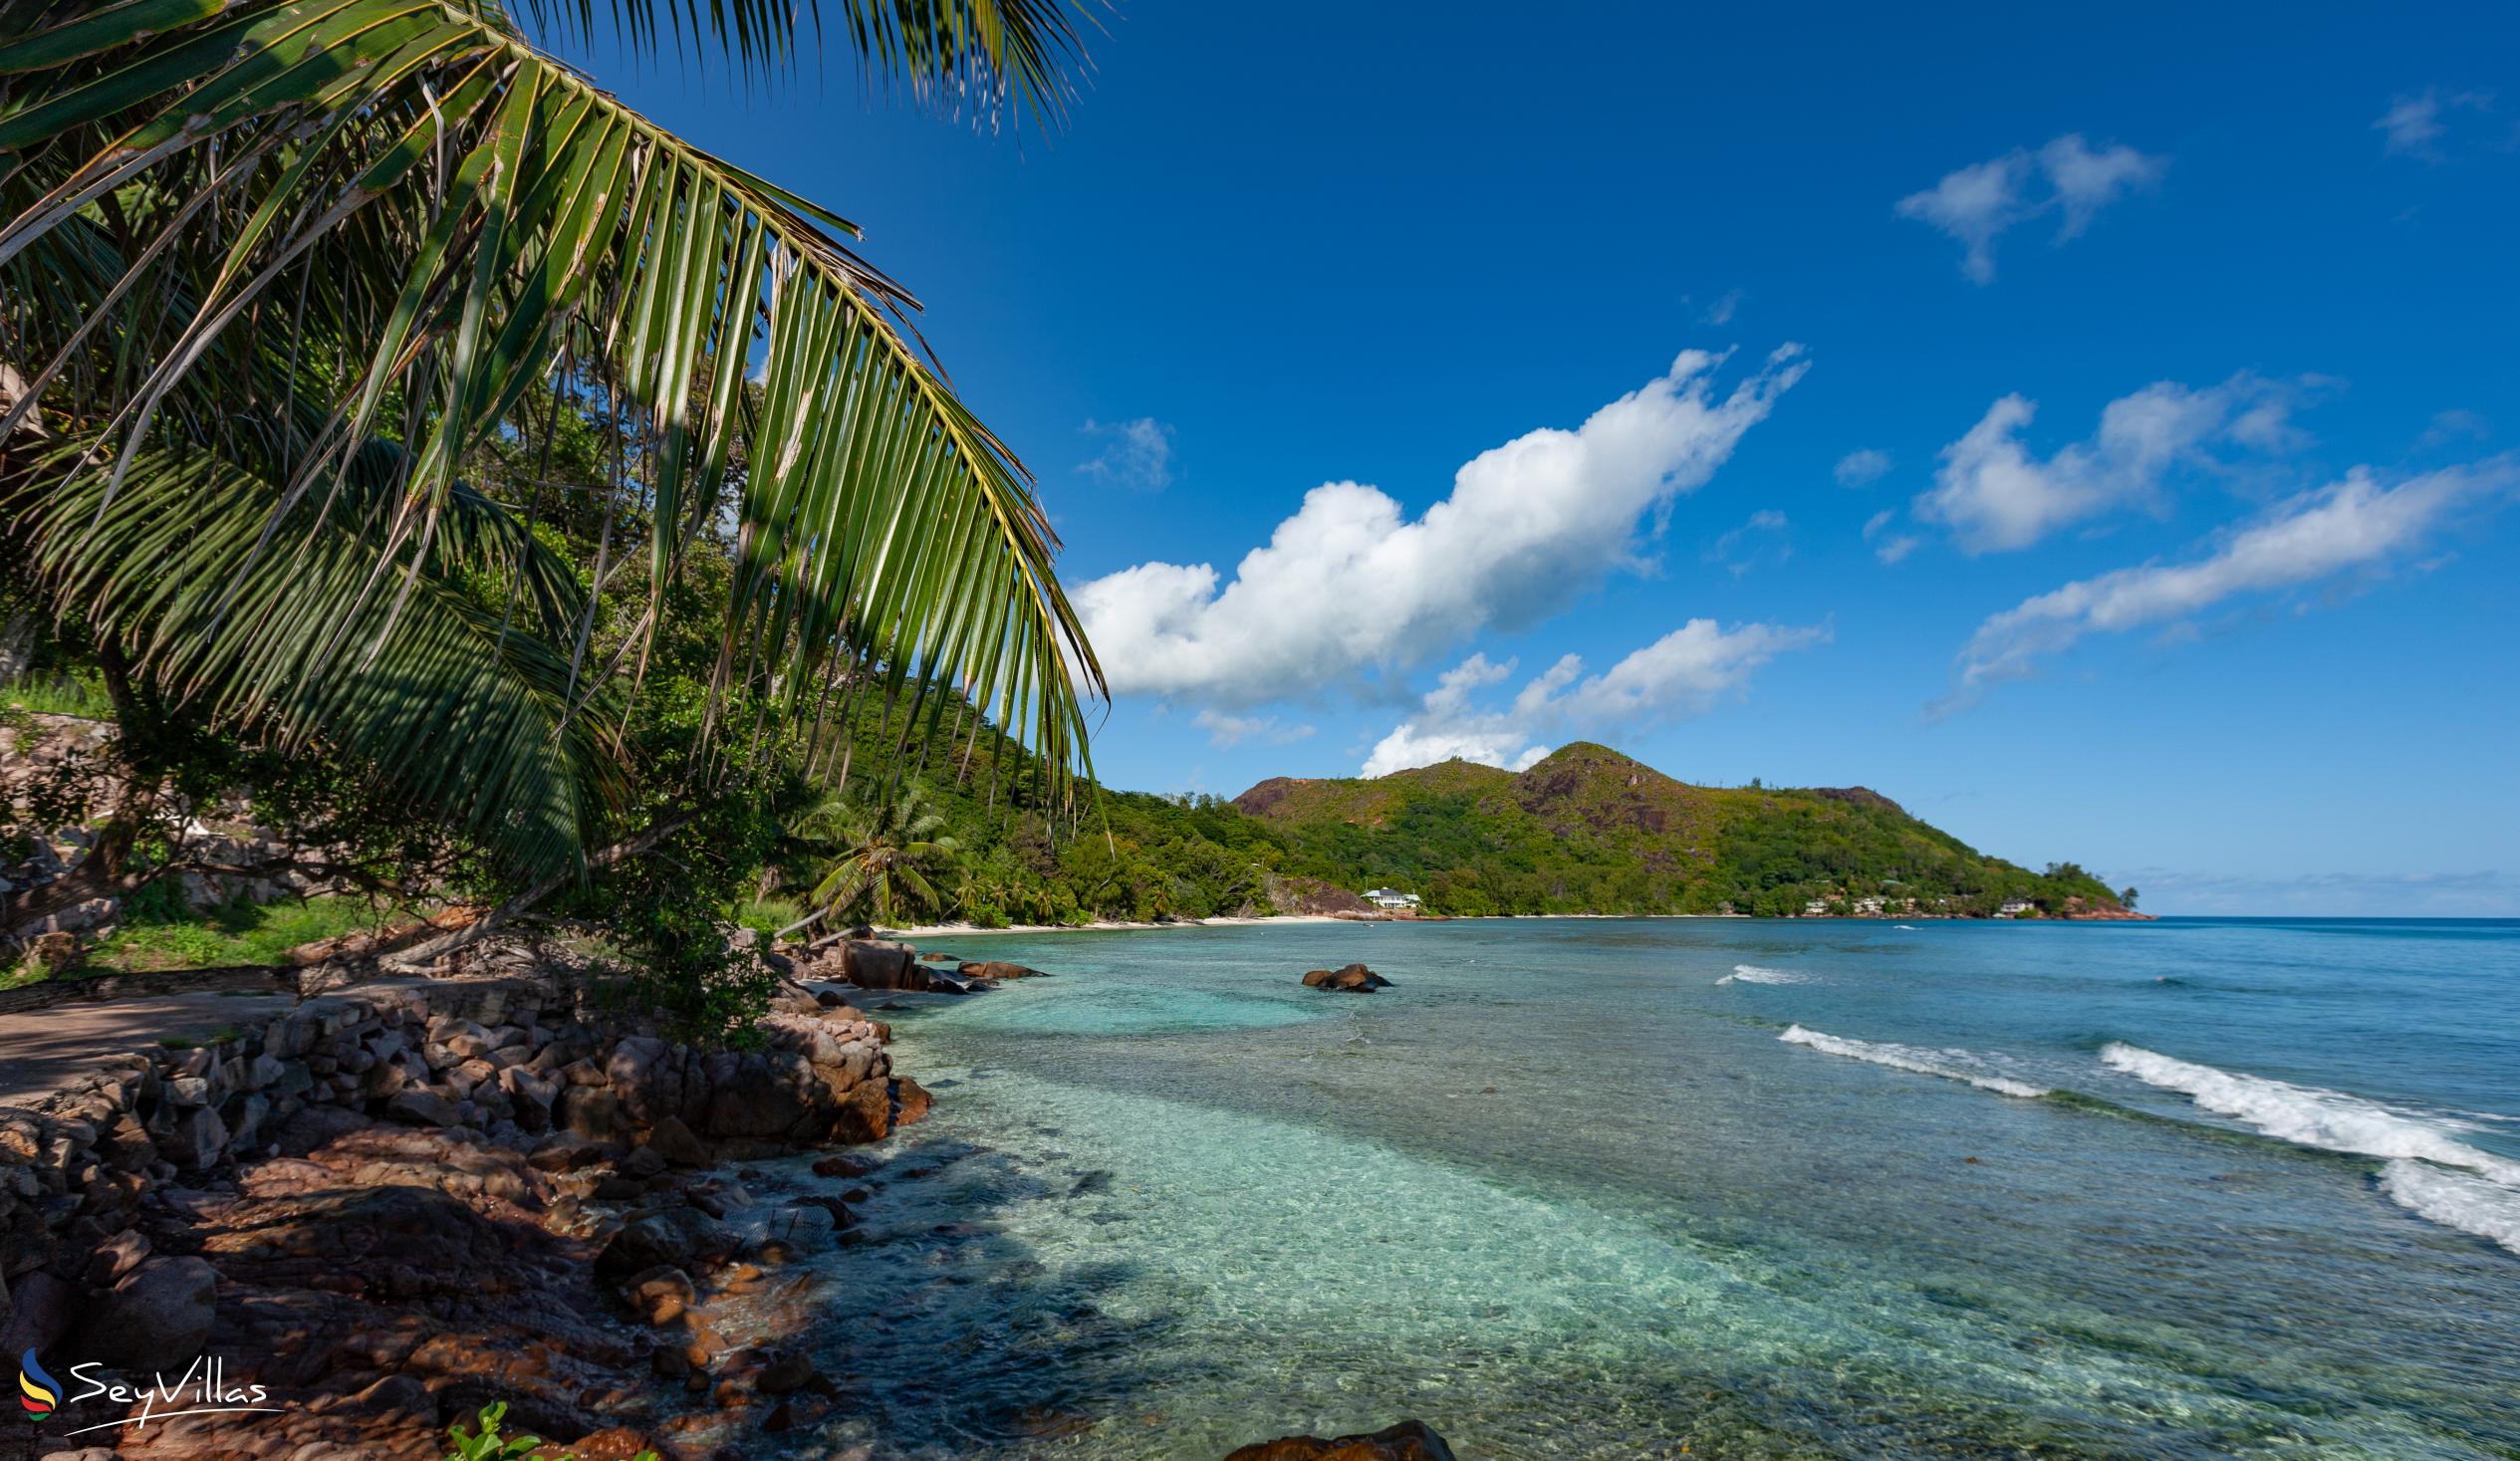 Foto 18: Cote Mer Villa - Posizione - Praslin (Seychelles)